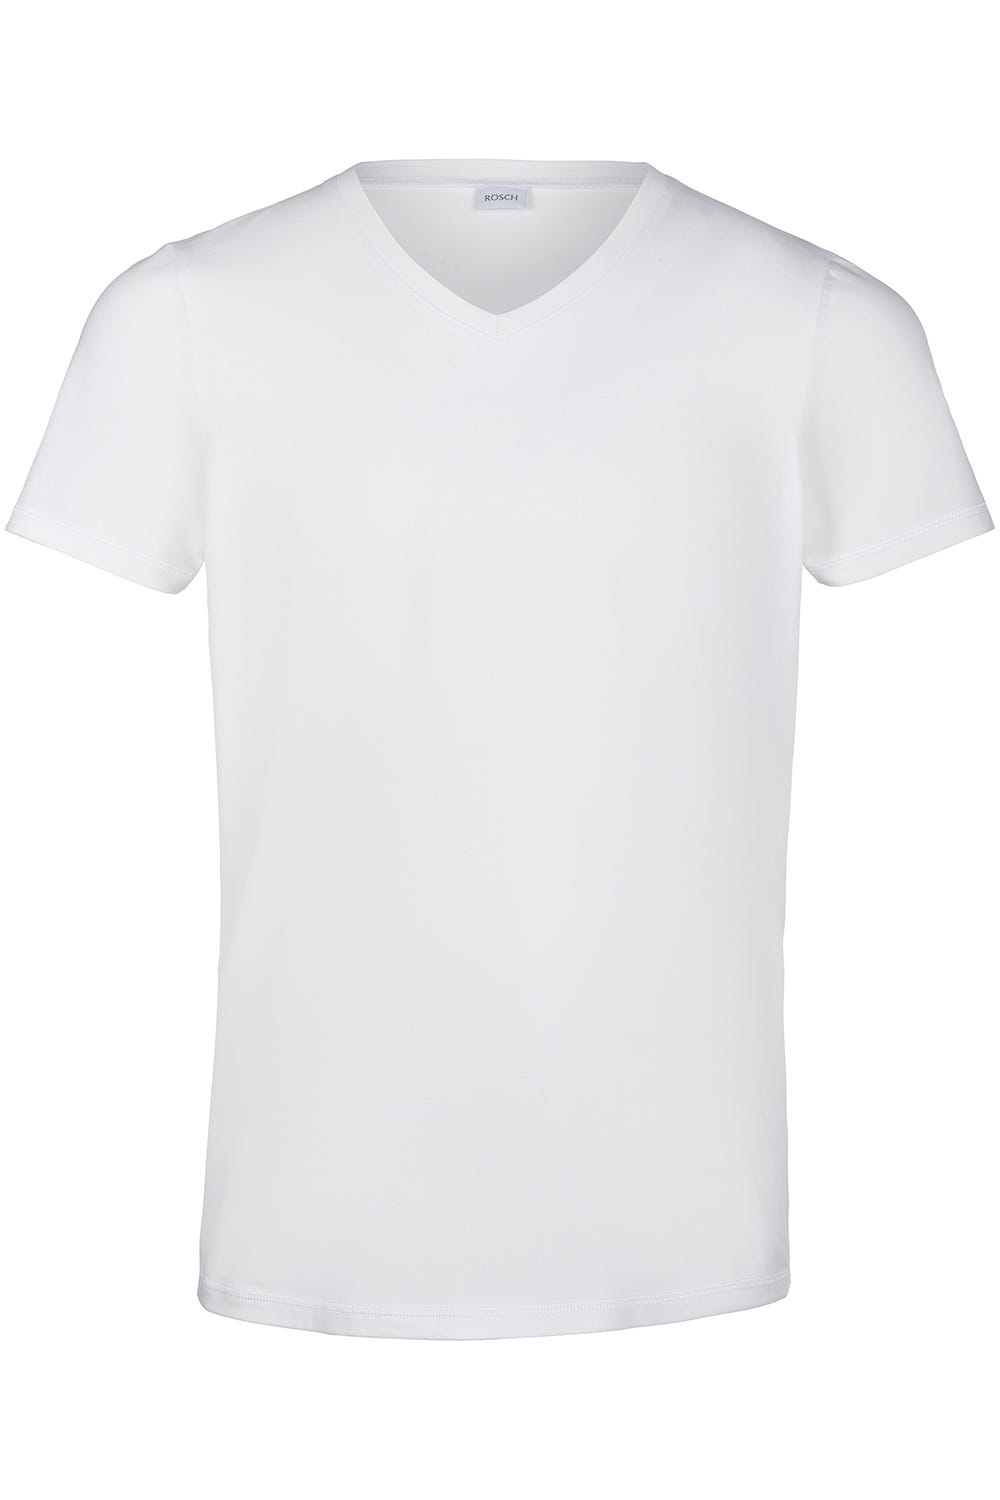 Herren Basic T-Shirt mit V-Ausschnitt Klassisch Baumwolle/Elasthan Weiß   